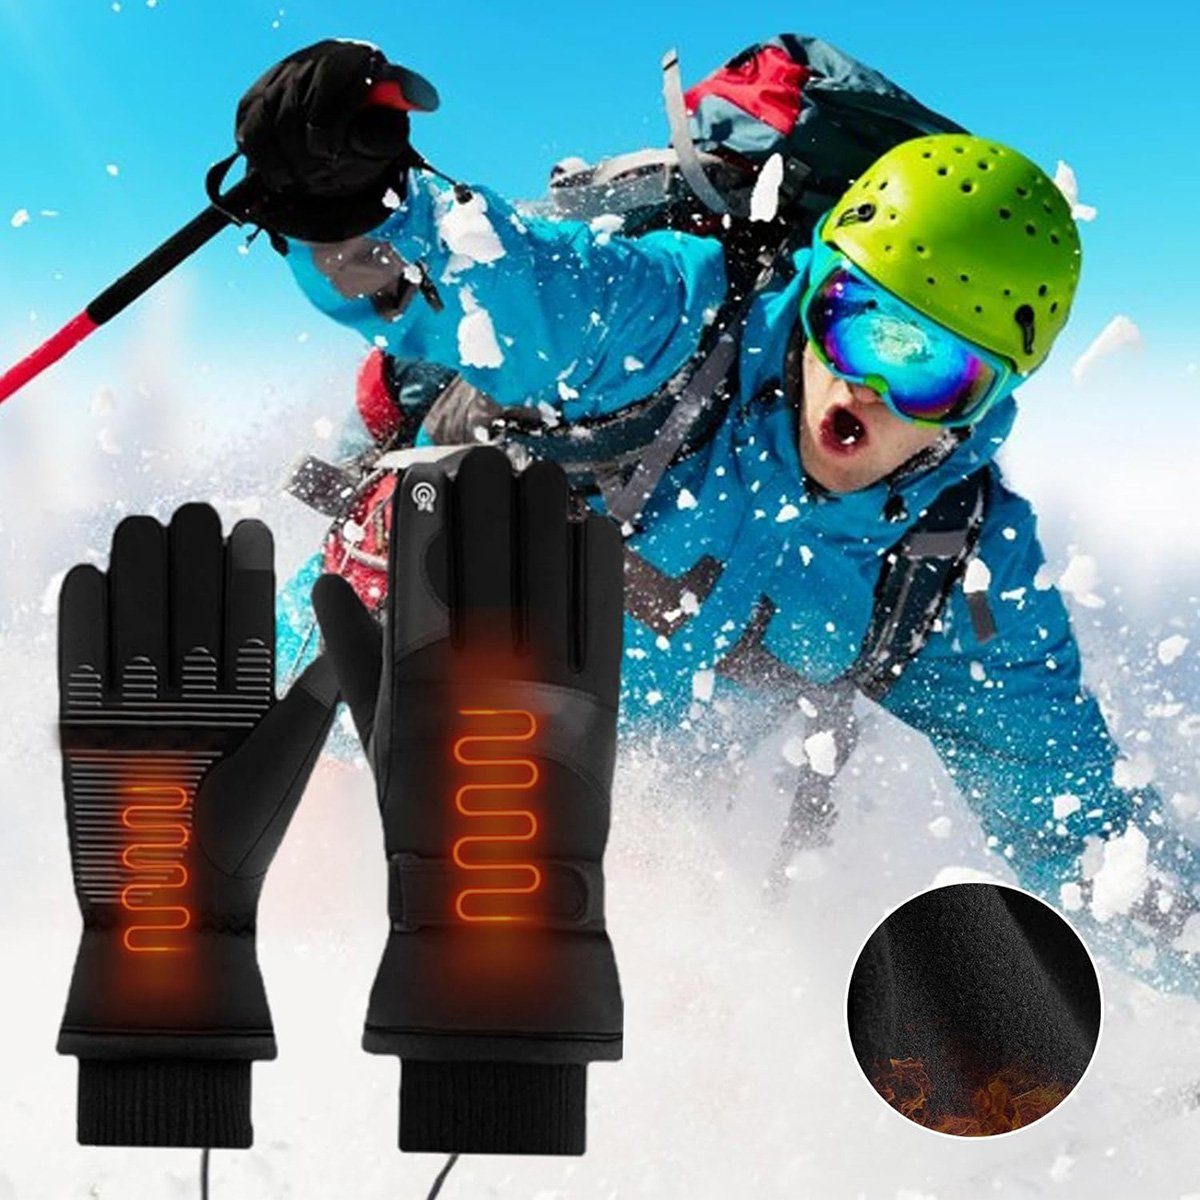 Elektrischer Wandern, zum Fahrradhandschuhe Winter Touchscreen Angeln Handgelenksringen, elastischen Heizhandschuh götäzer Klettern, Mit USB